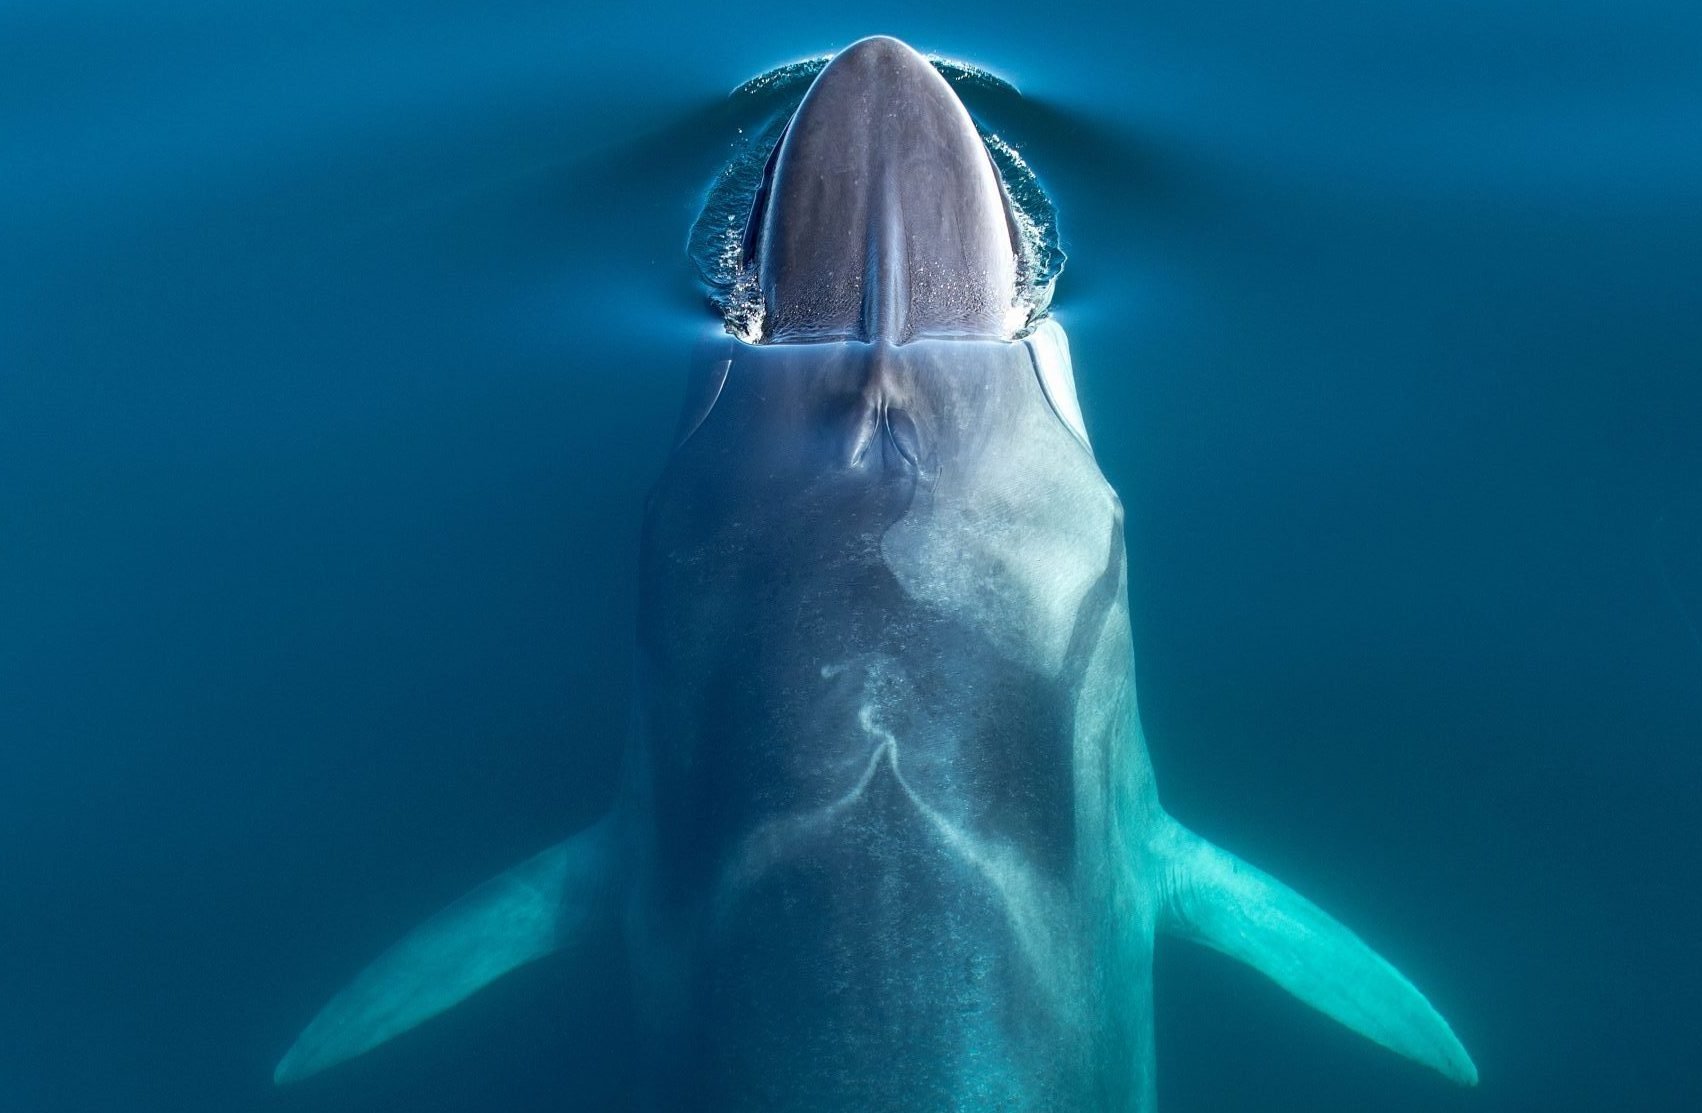 Fin whale head